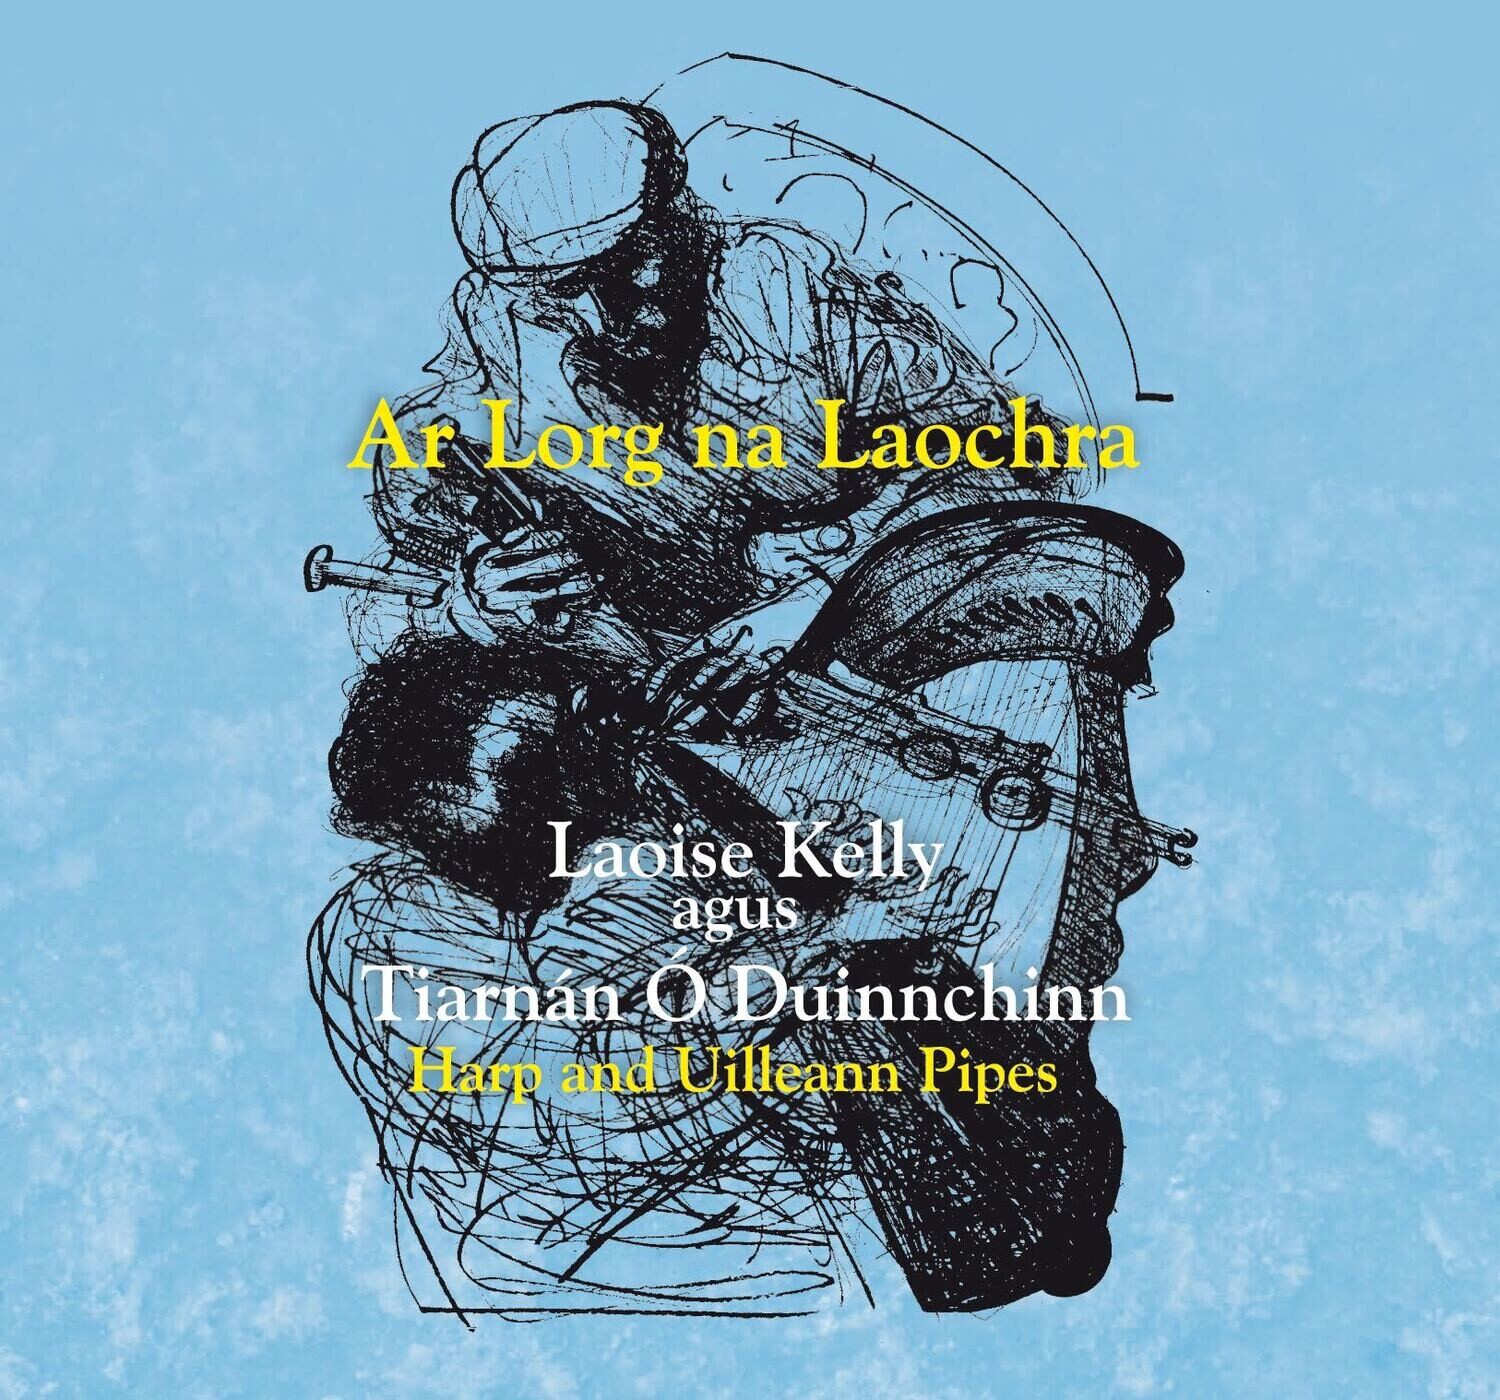 Ar Lorg na Laochra / On The Shoulders of Giants
Laoise Kelly (harp) & Tiarnán Ó Duinnchinn
(Hard Copy)